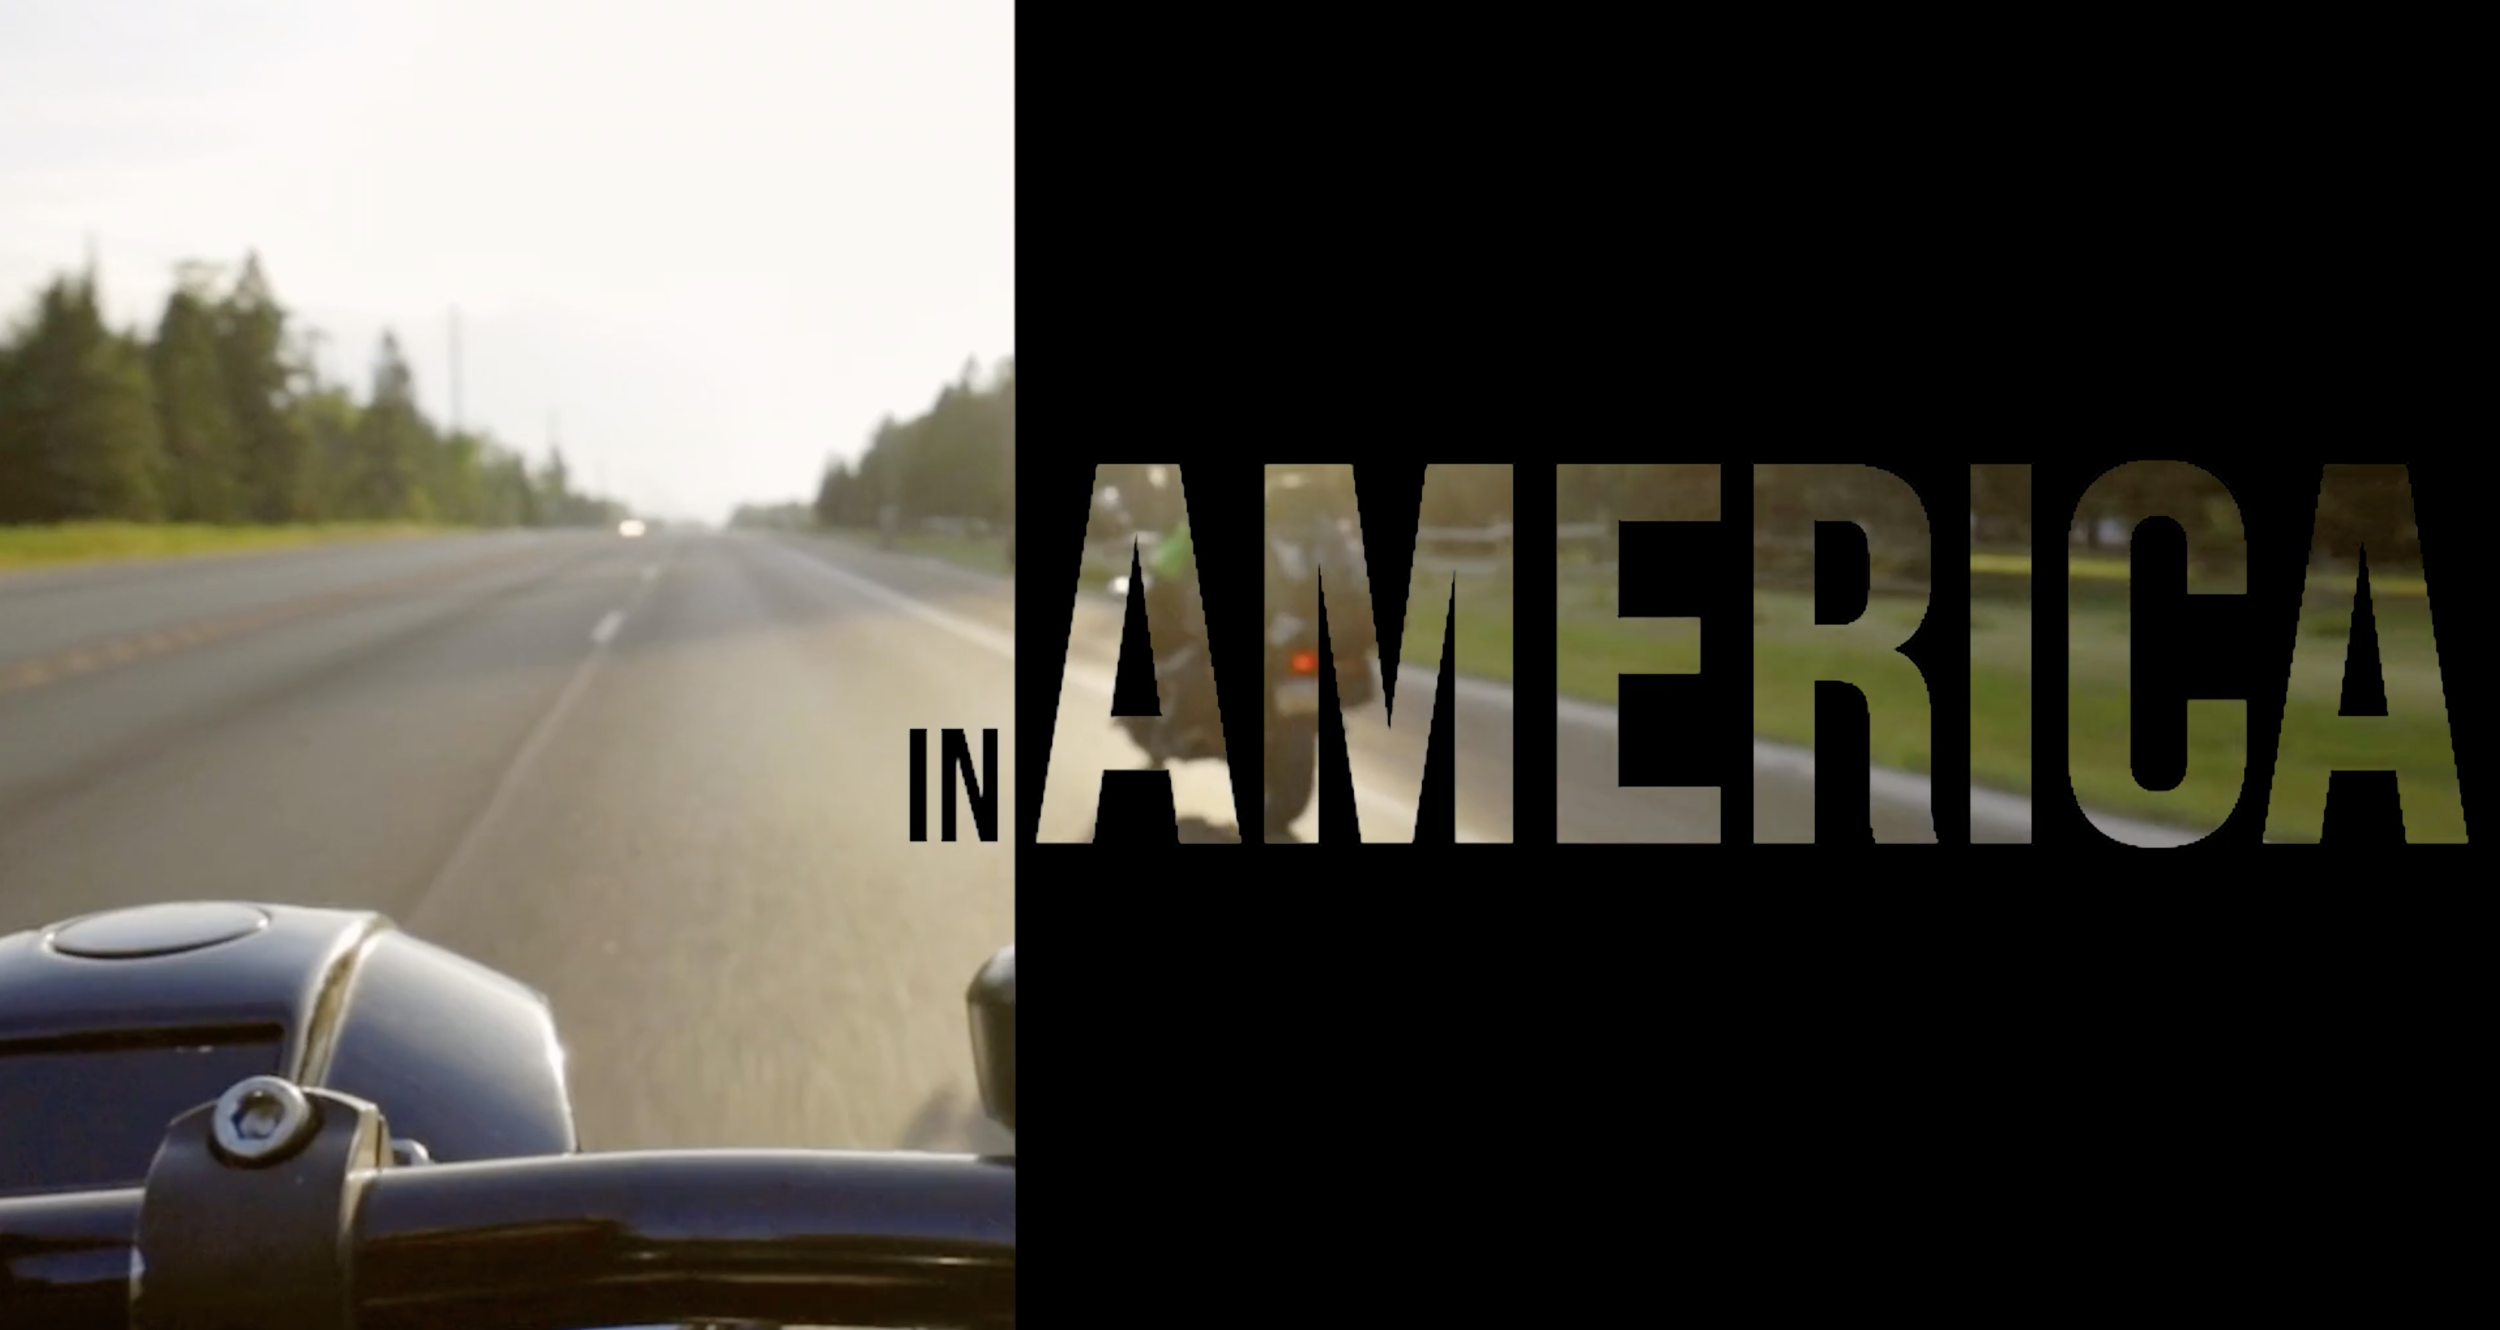 In America|https://vimeo.com/572763513/320fc058f9